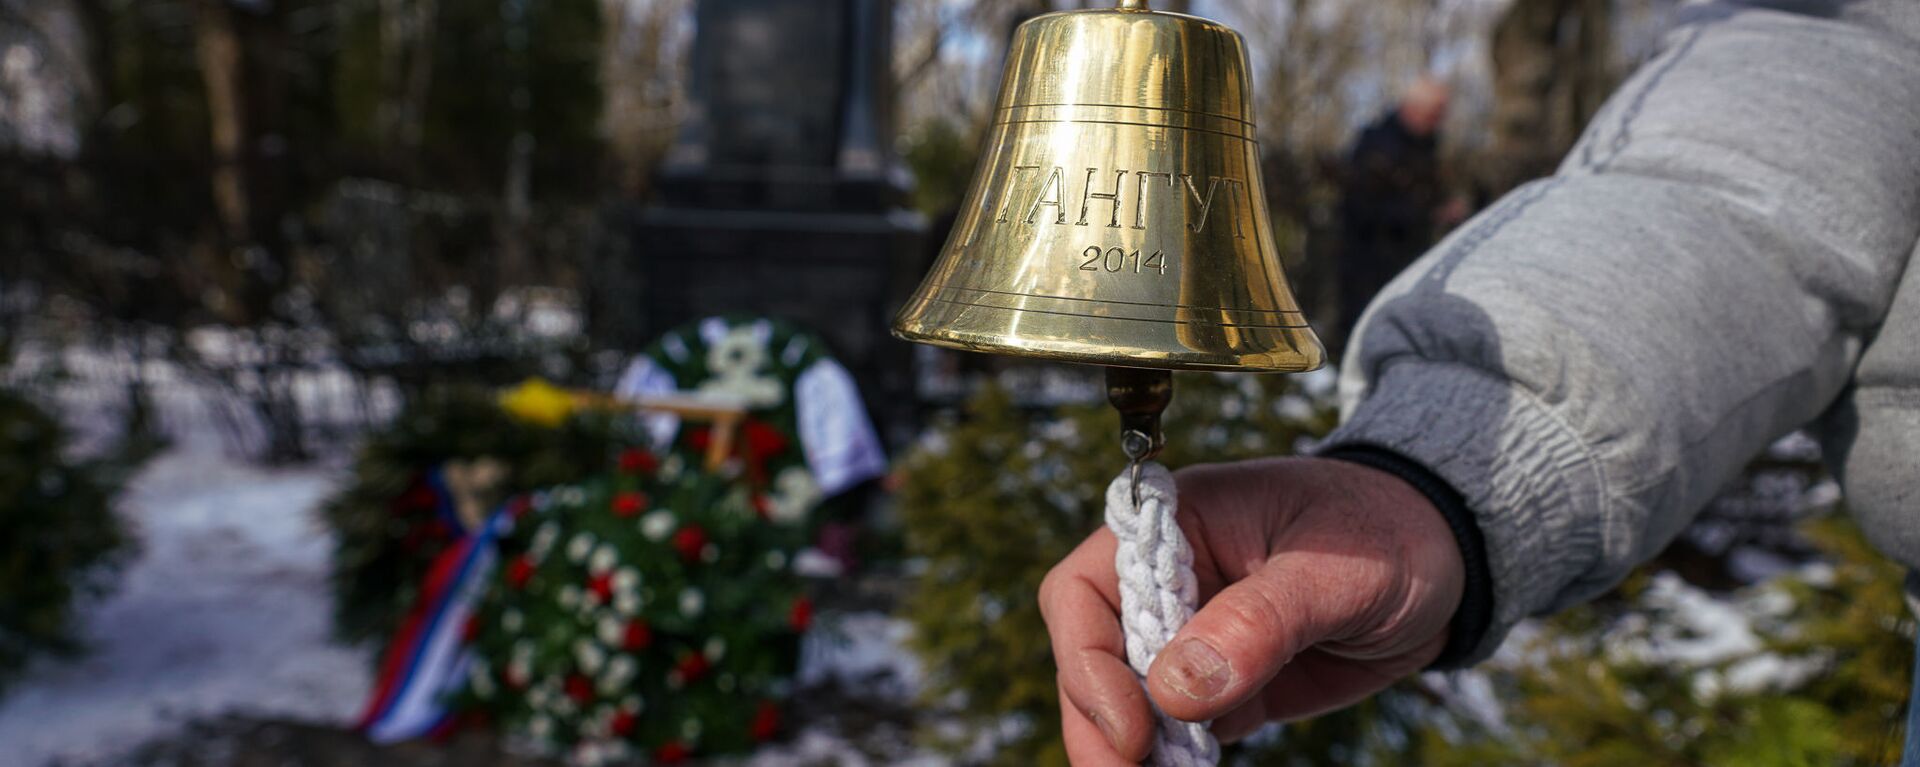 Корабельная рында звонит в память о моряках-подводниках - Sputnik Латвия, 1920, 22.03.2021